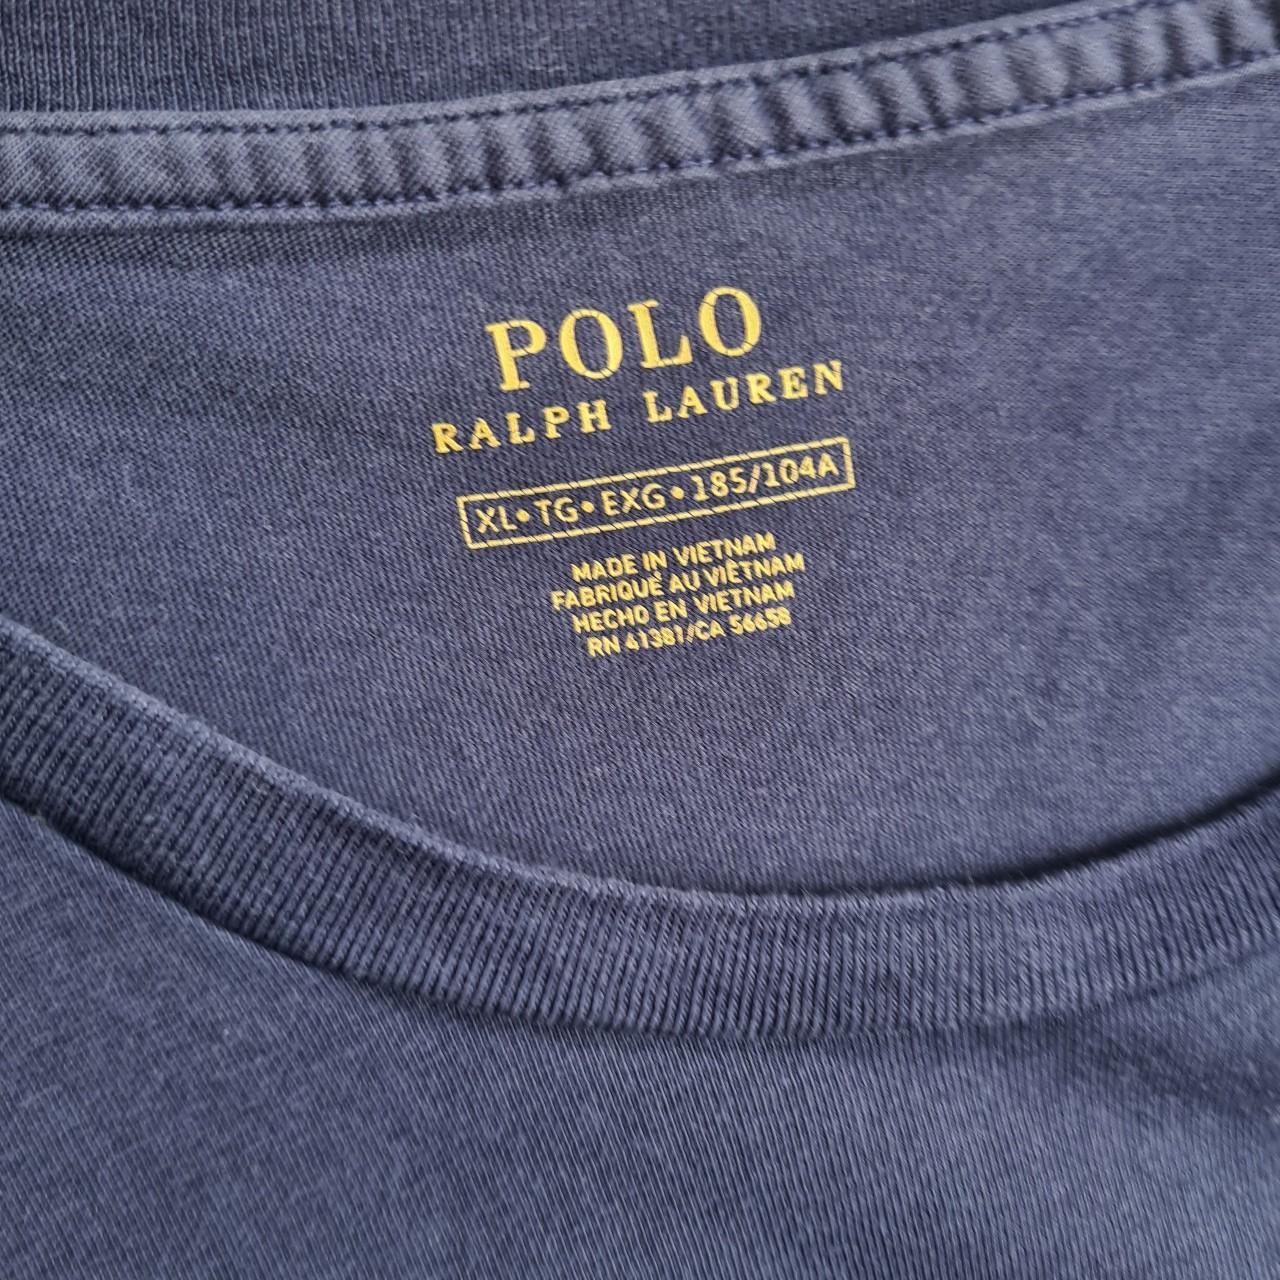 Men's Polo Ralph Lauren USA Flag Print T-Shirt XL... - Depop